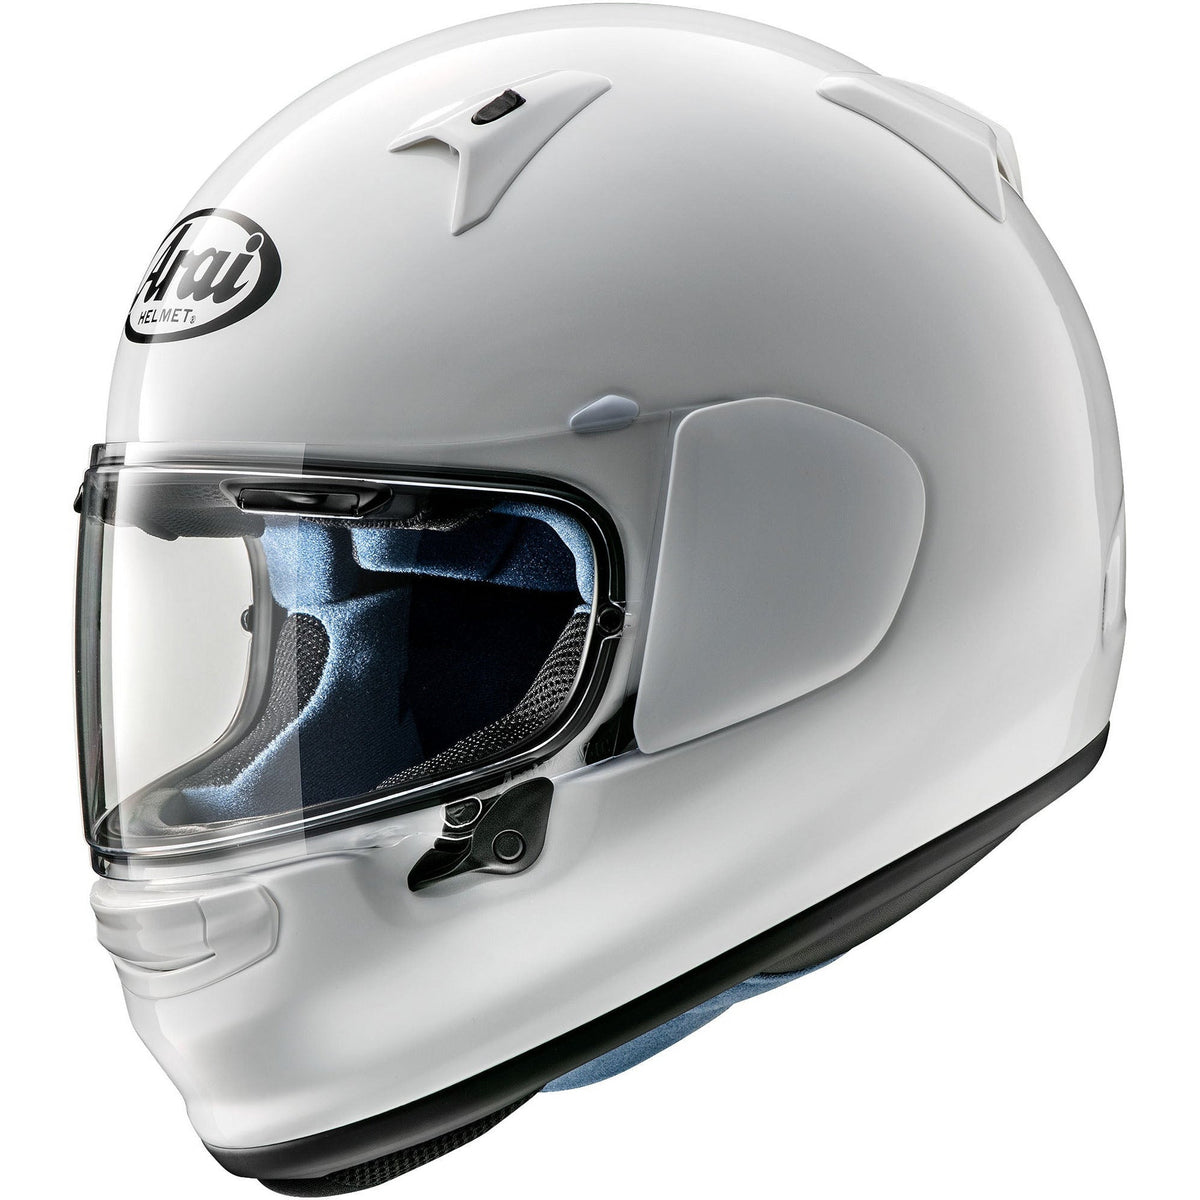 Regent-X Helmet (White)